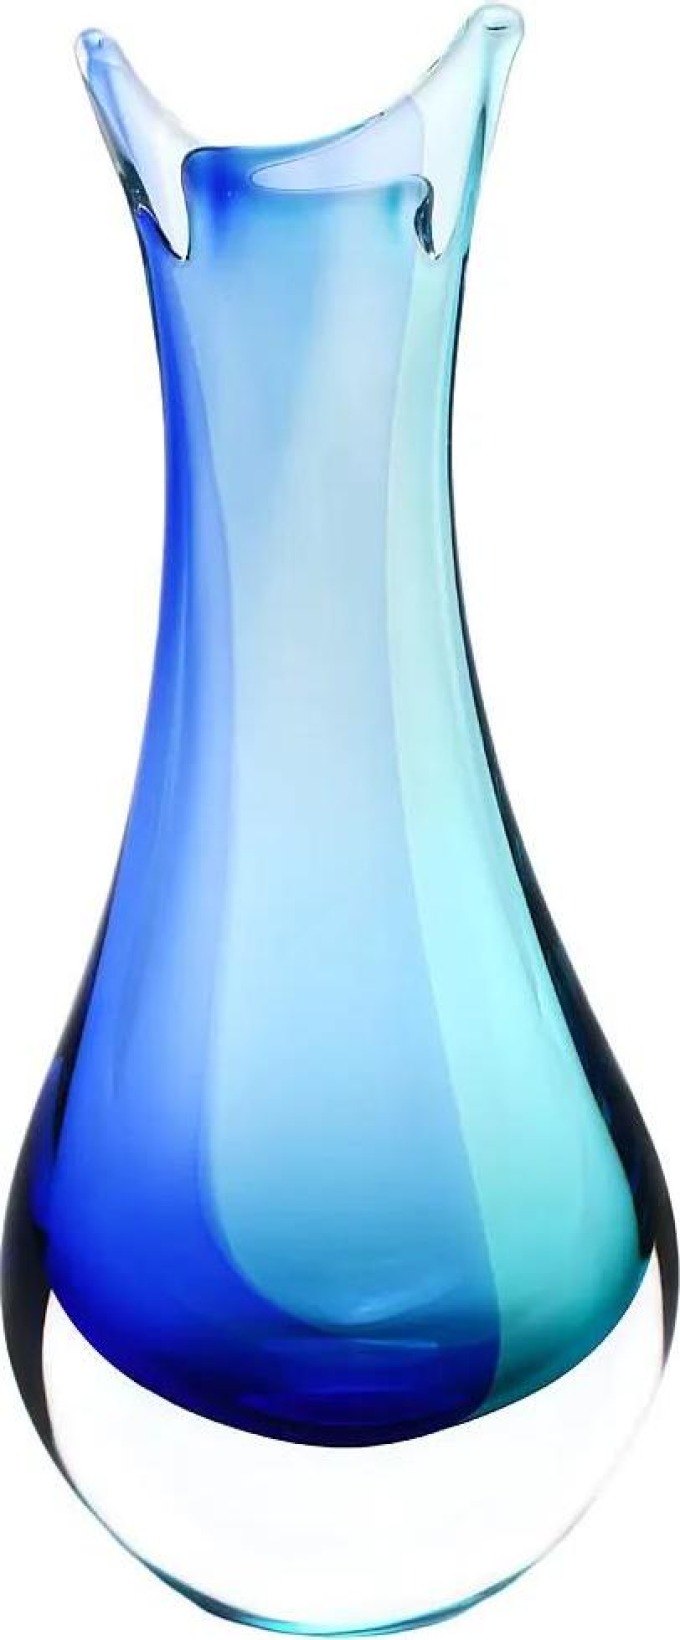 Skleněná váza hutní 09, modrá a tyrkysová, 26 cm | České hutní sklo od Artcristal Bohemia